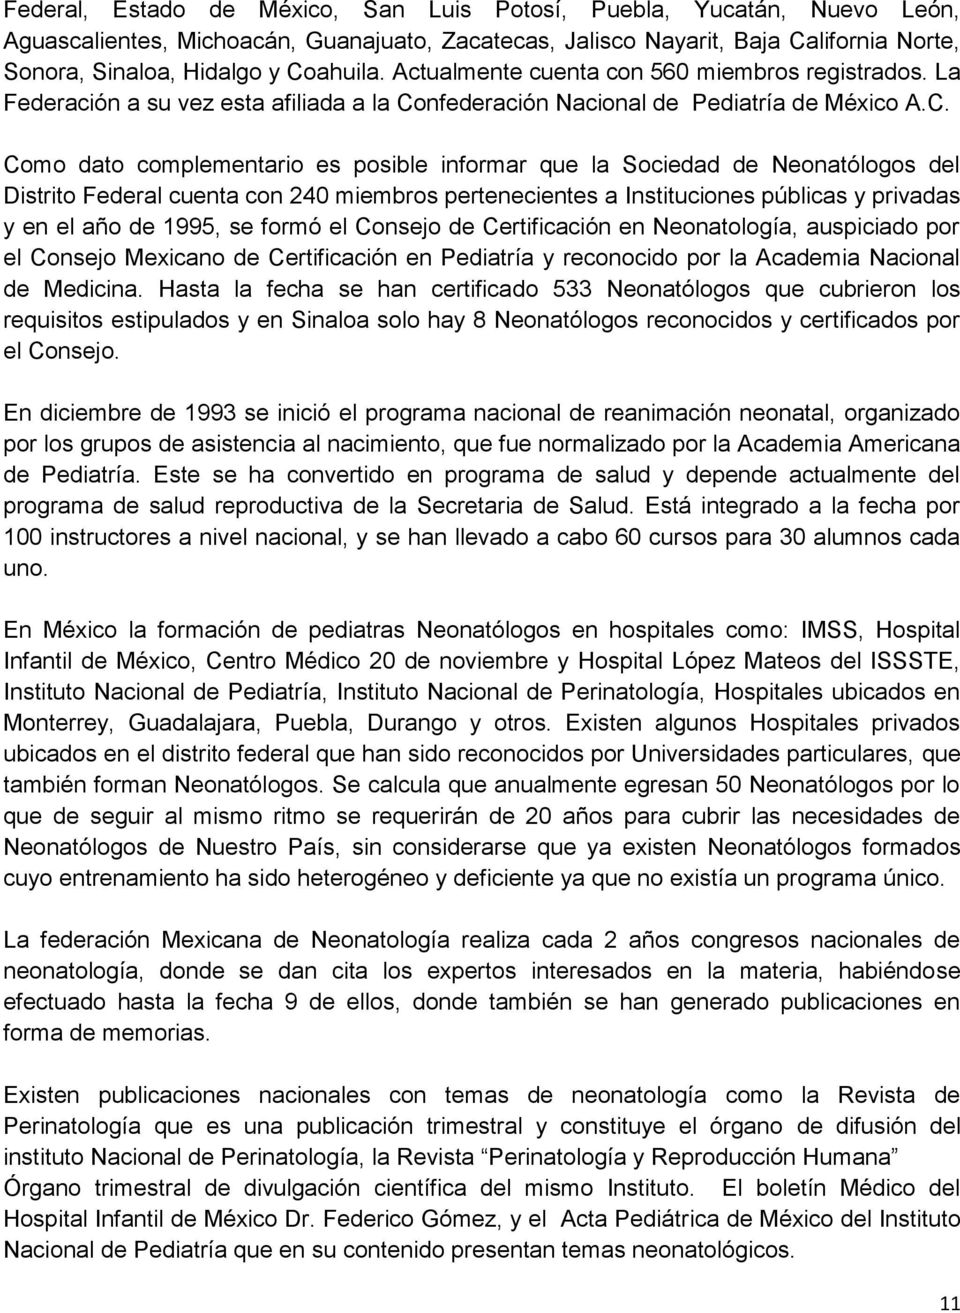 nfederación Nacional de Pediatría de México A.C.